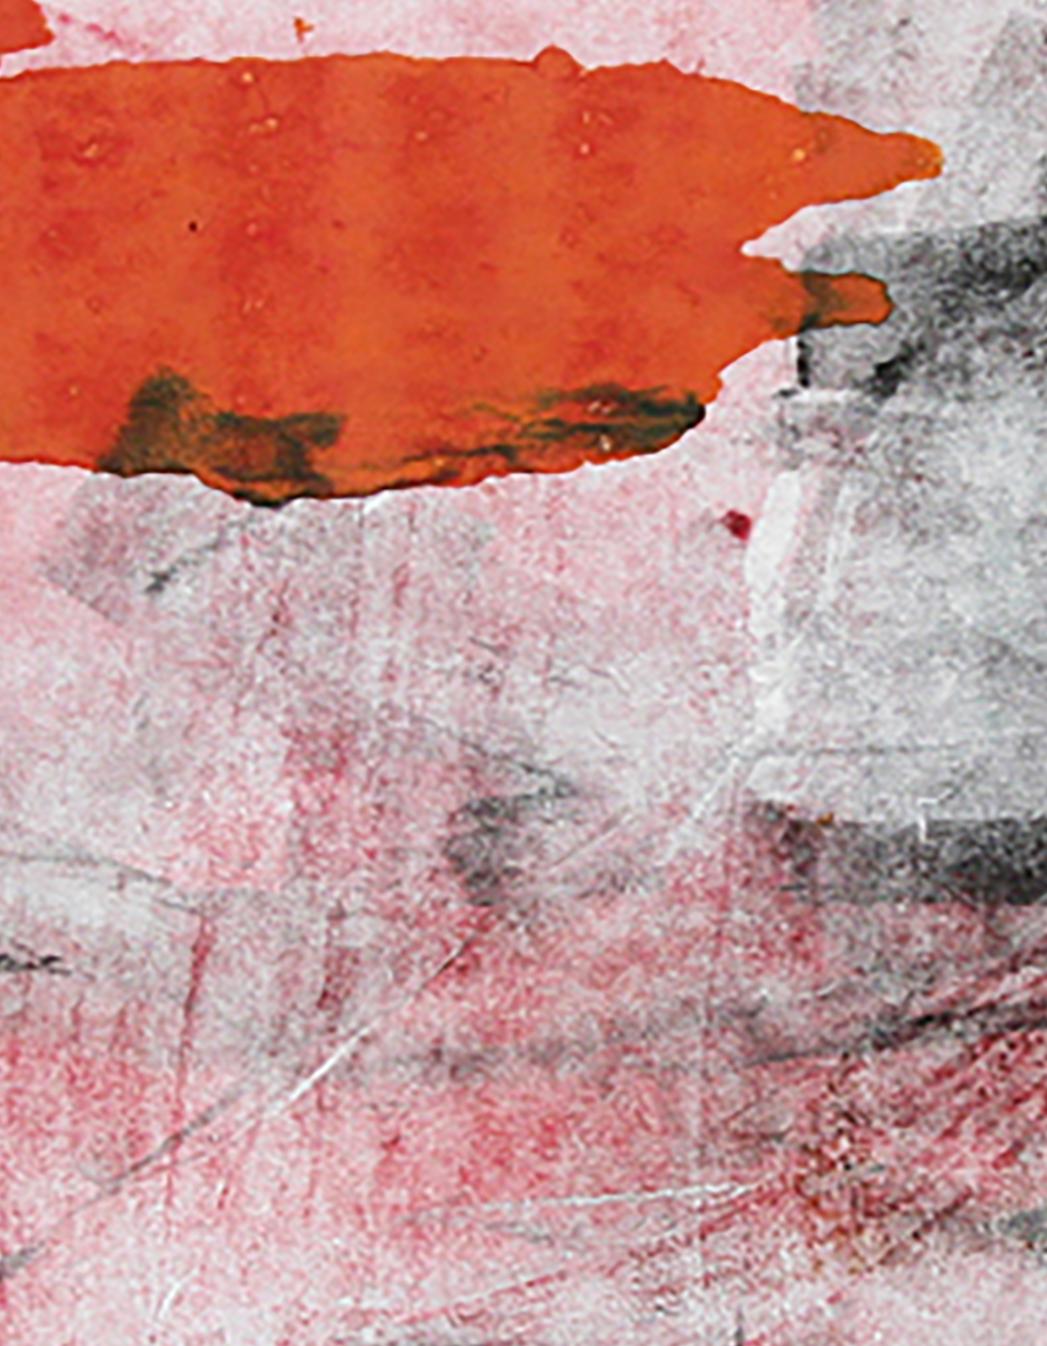 Abstrakte Monotypie auf Papier von abstraktem Blast (R), orange und schwarz (Zeitgenössisch), Mixed Media Art, von Karin Bruckner